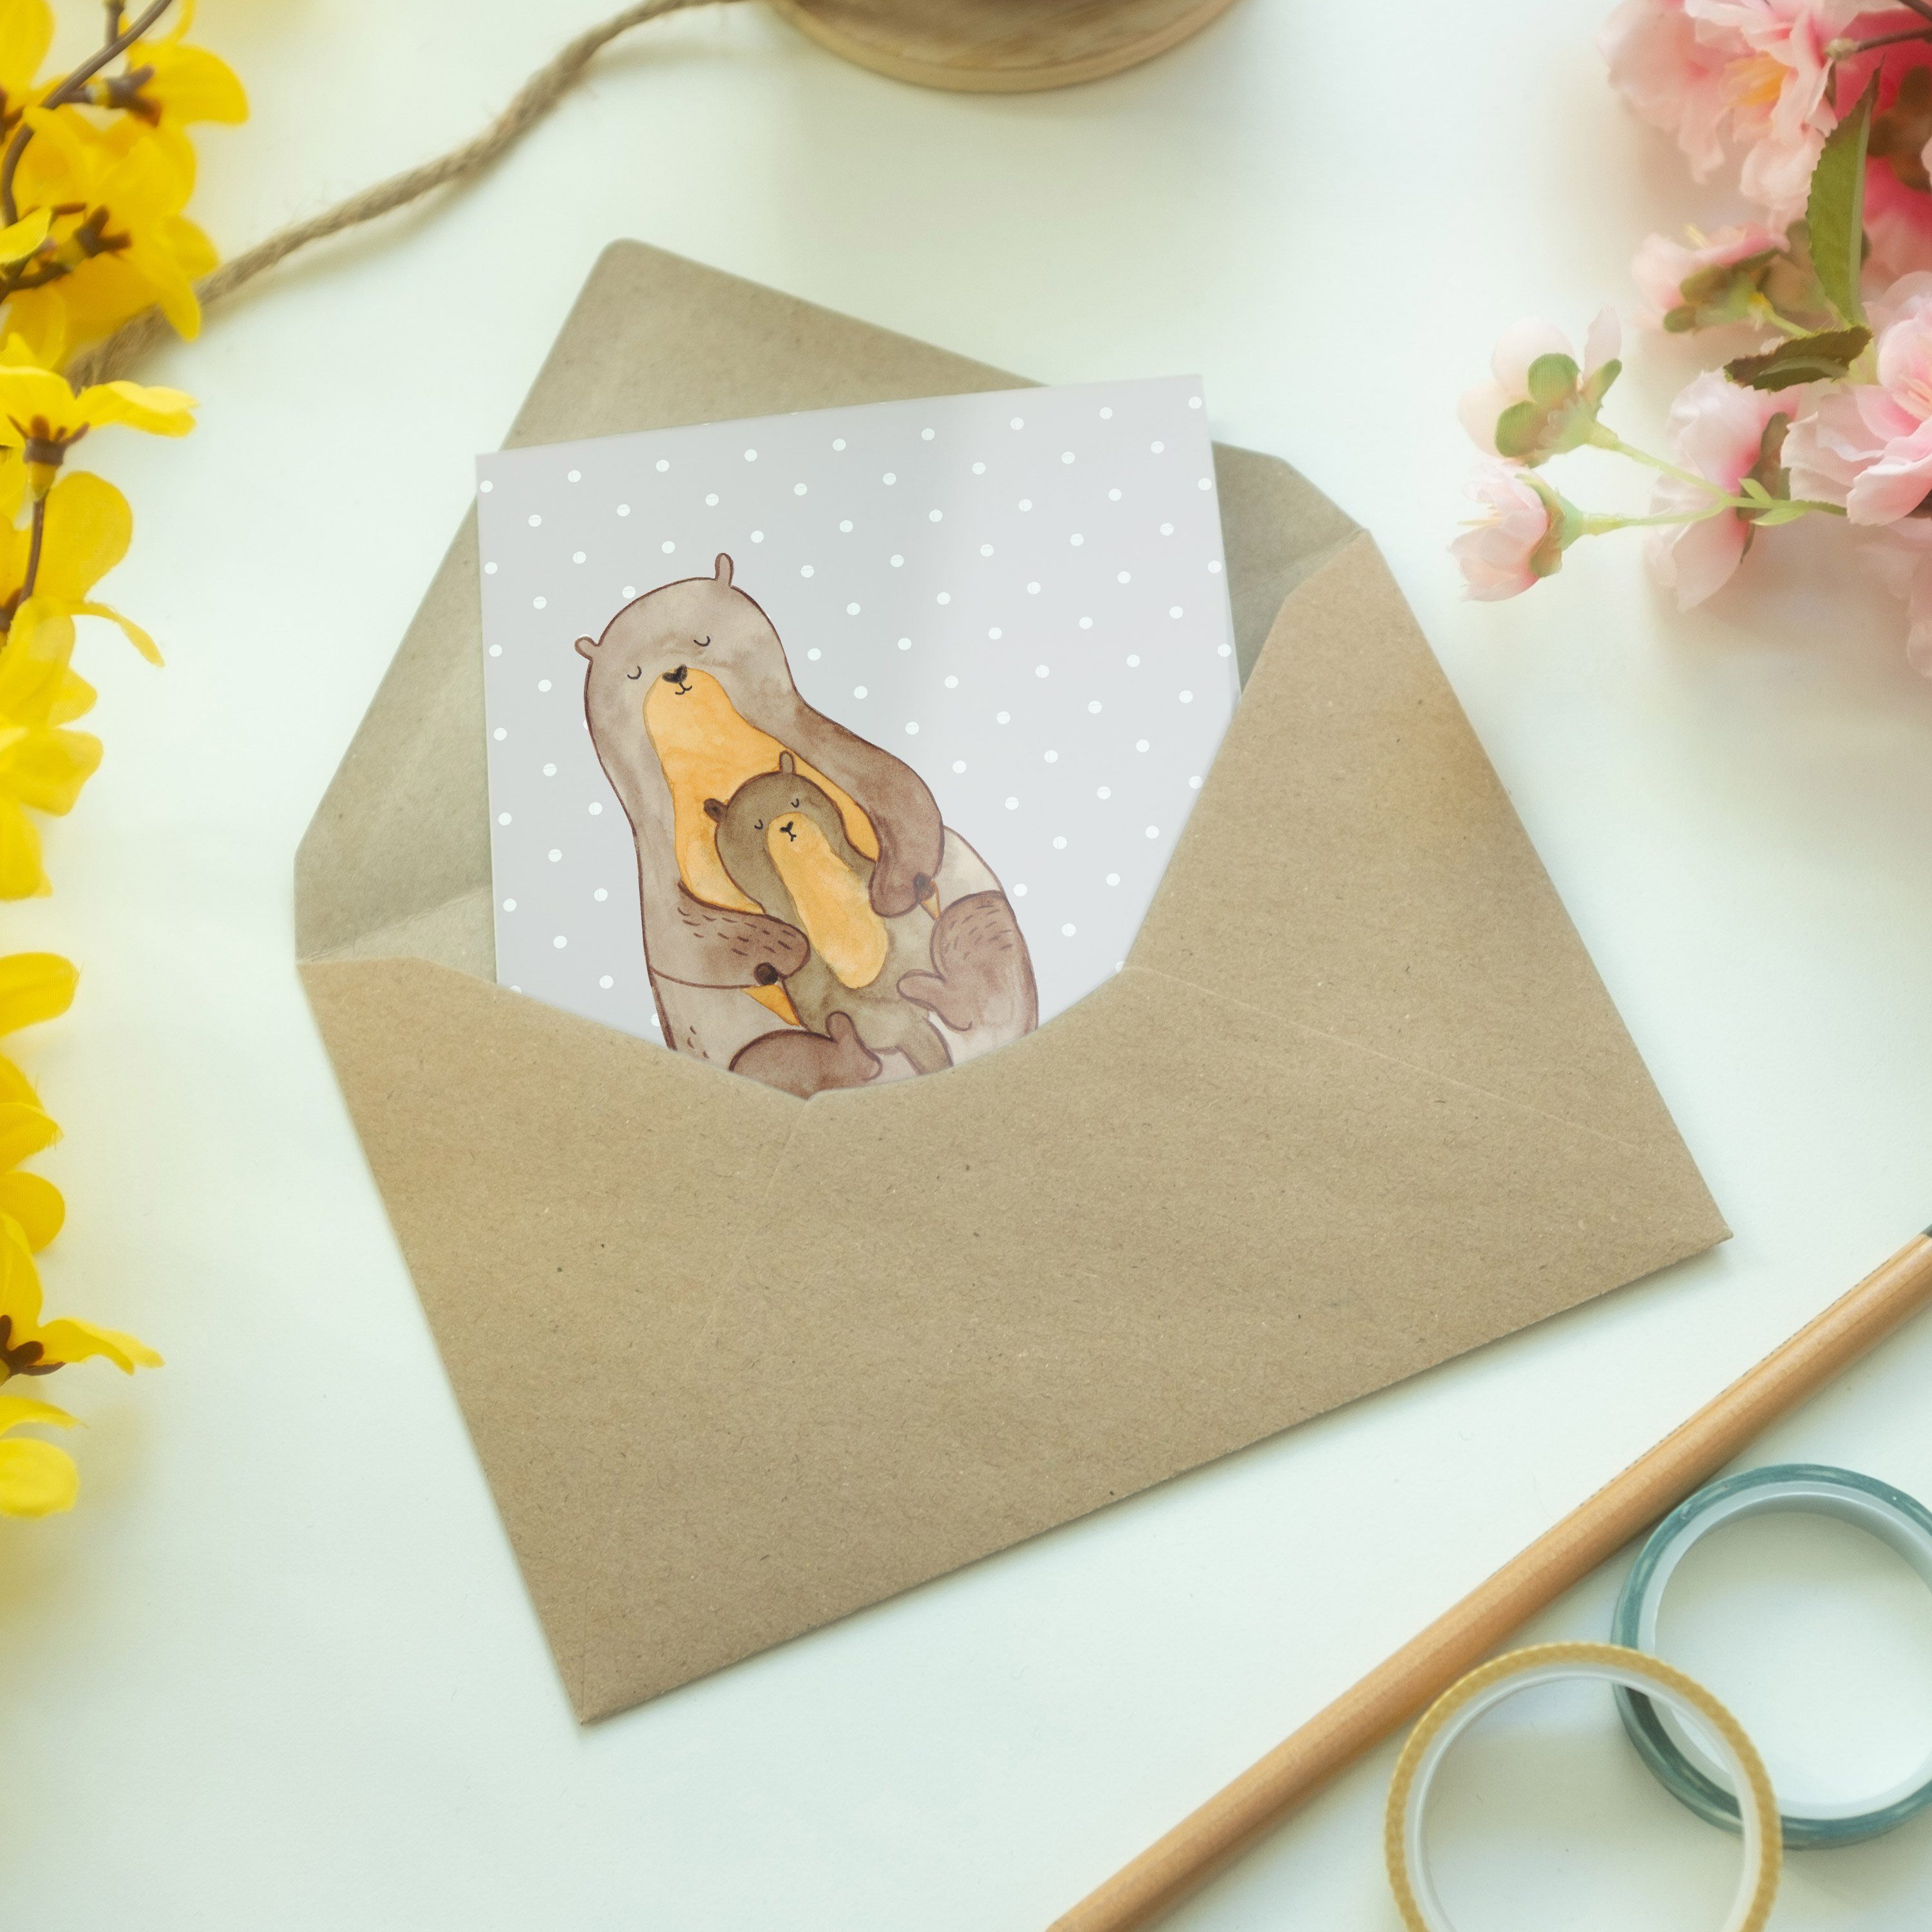 Mr. & Mrs. Panda O Familie, Kind Grußkarte Geschenk, Grau Einladungskarte, mit - - Pastell Otter